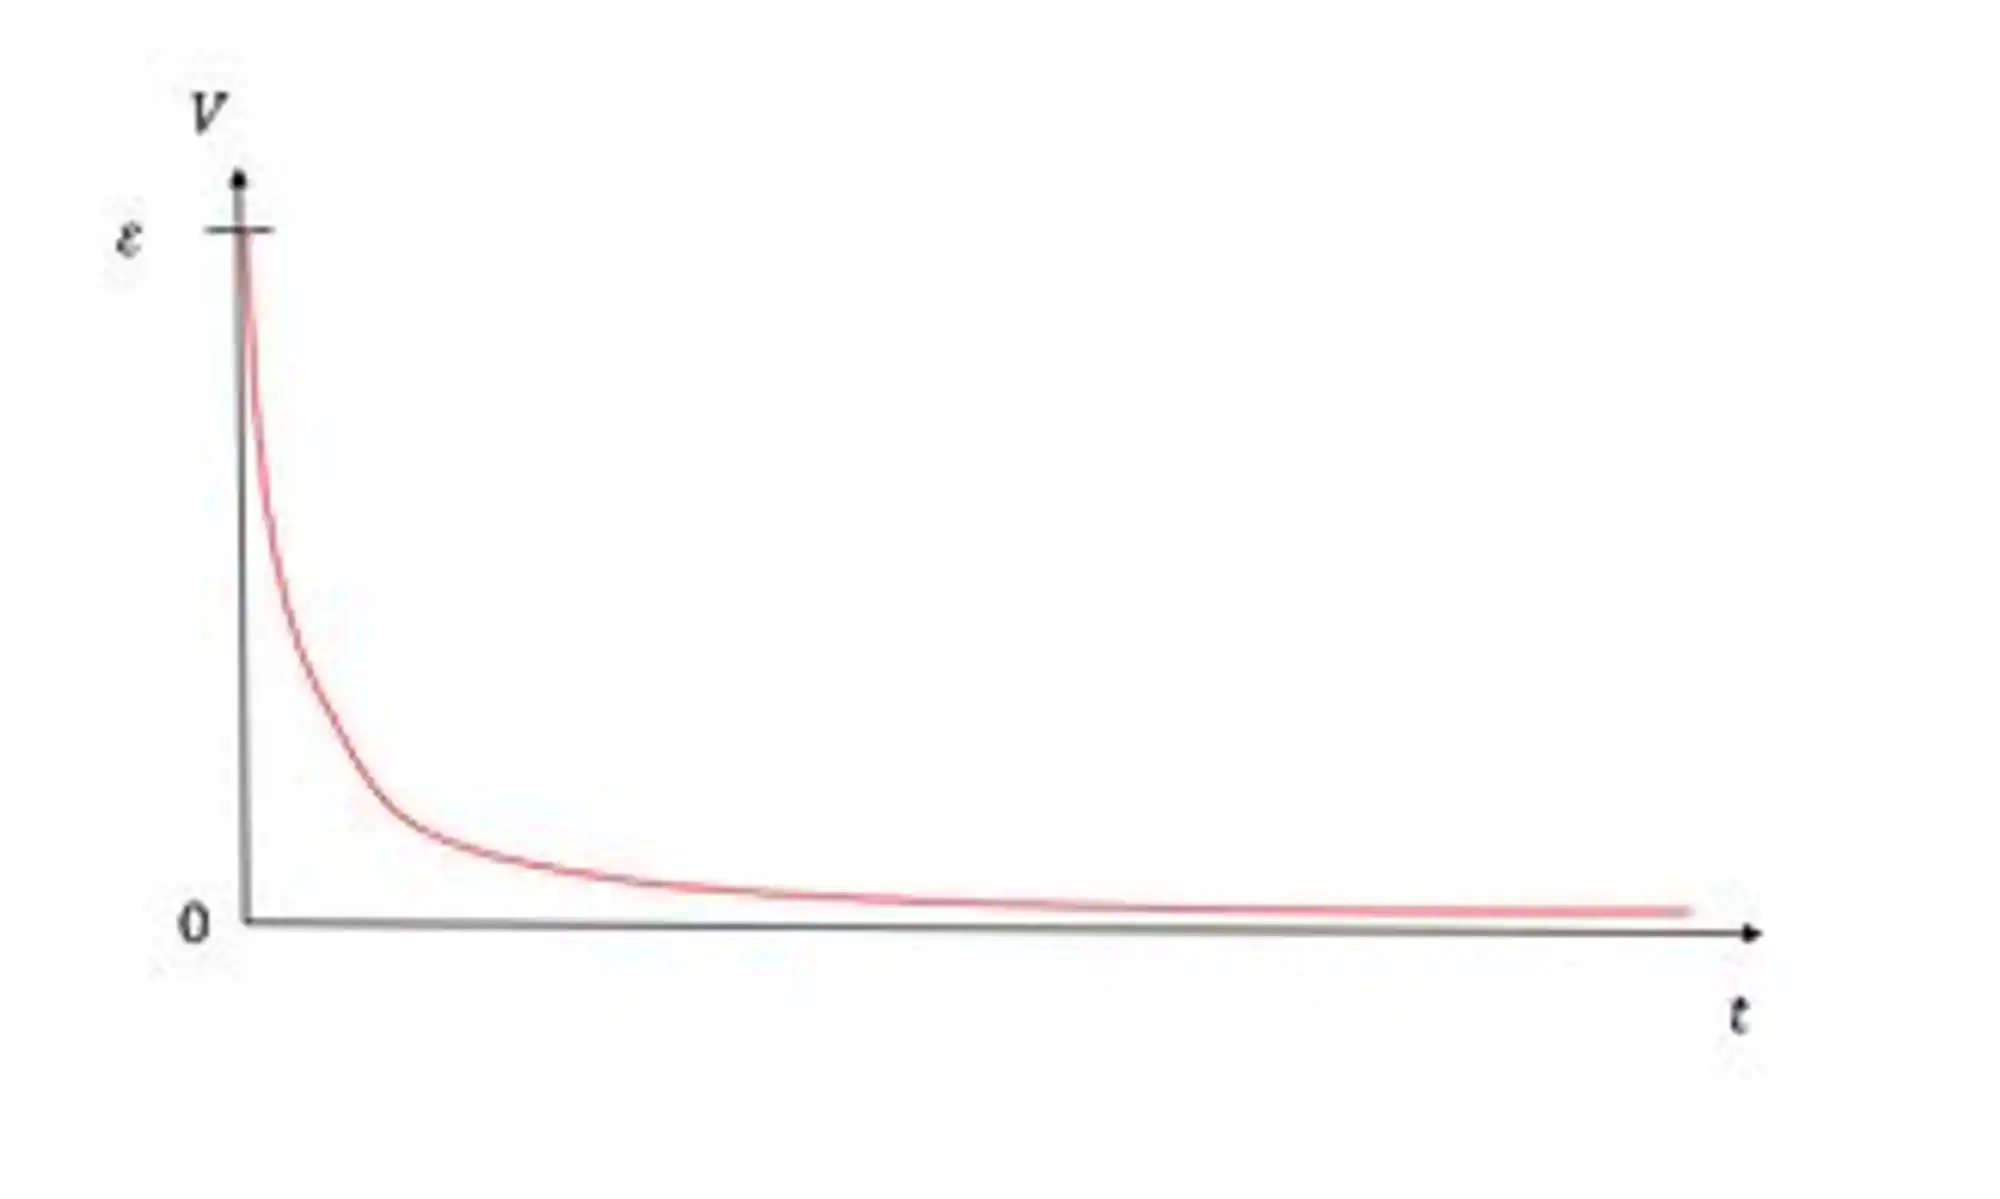 Gráfico do potencial em função do tempo.